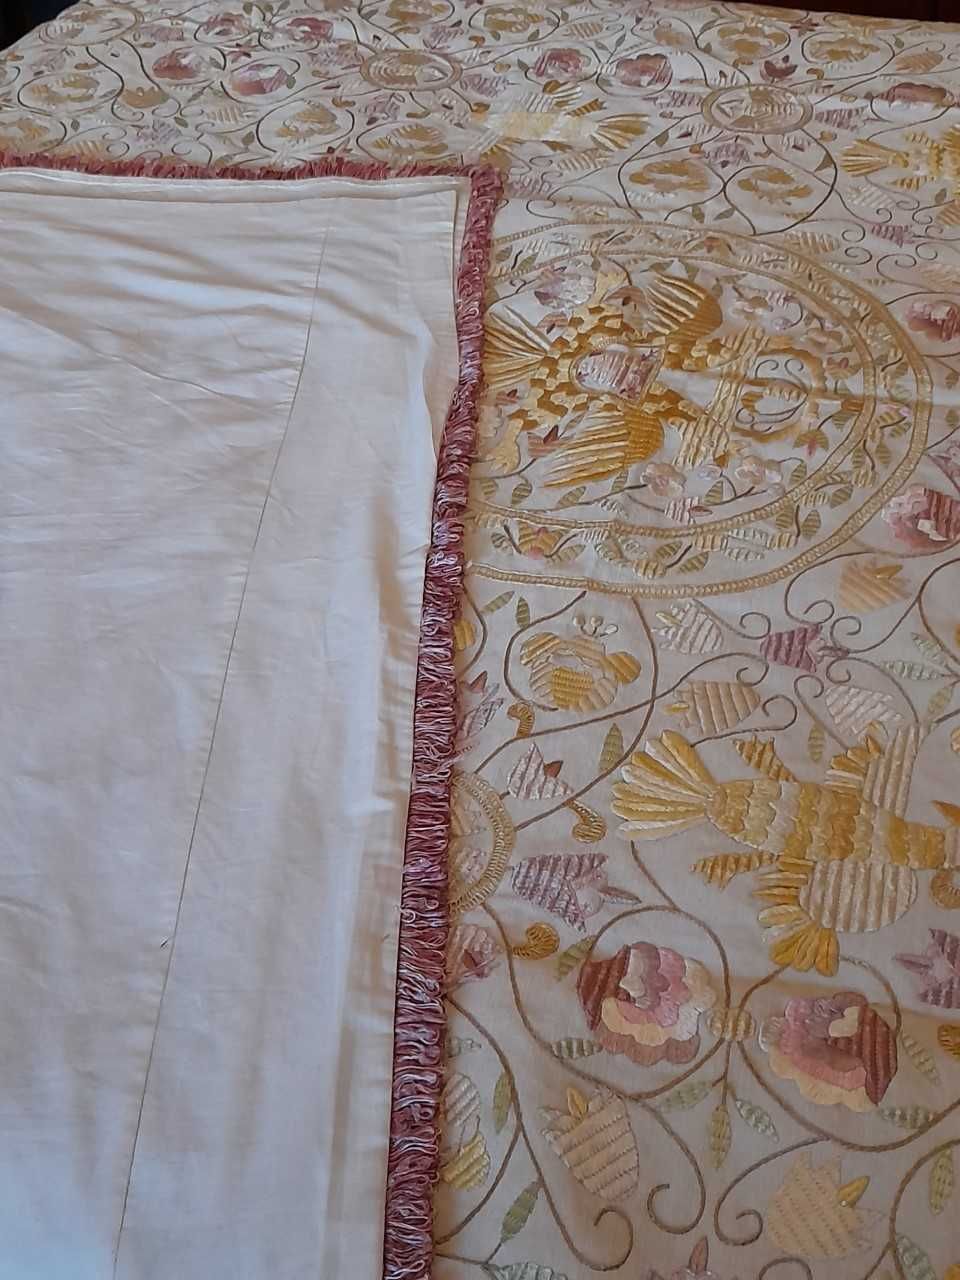 Colcha nova bordada (handmade bed quilt) de Castelo Branco certificada